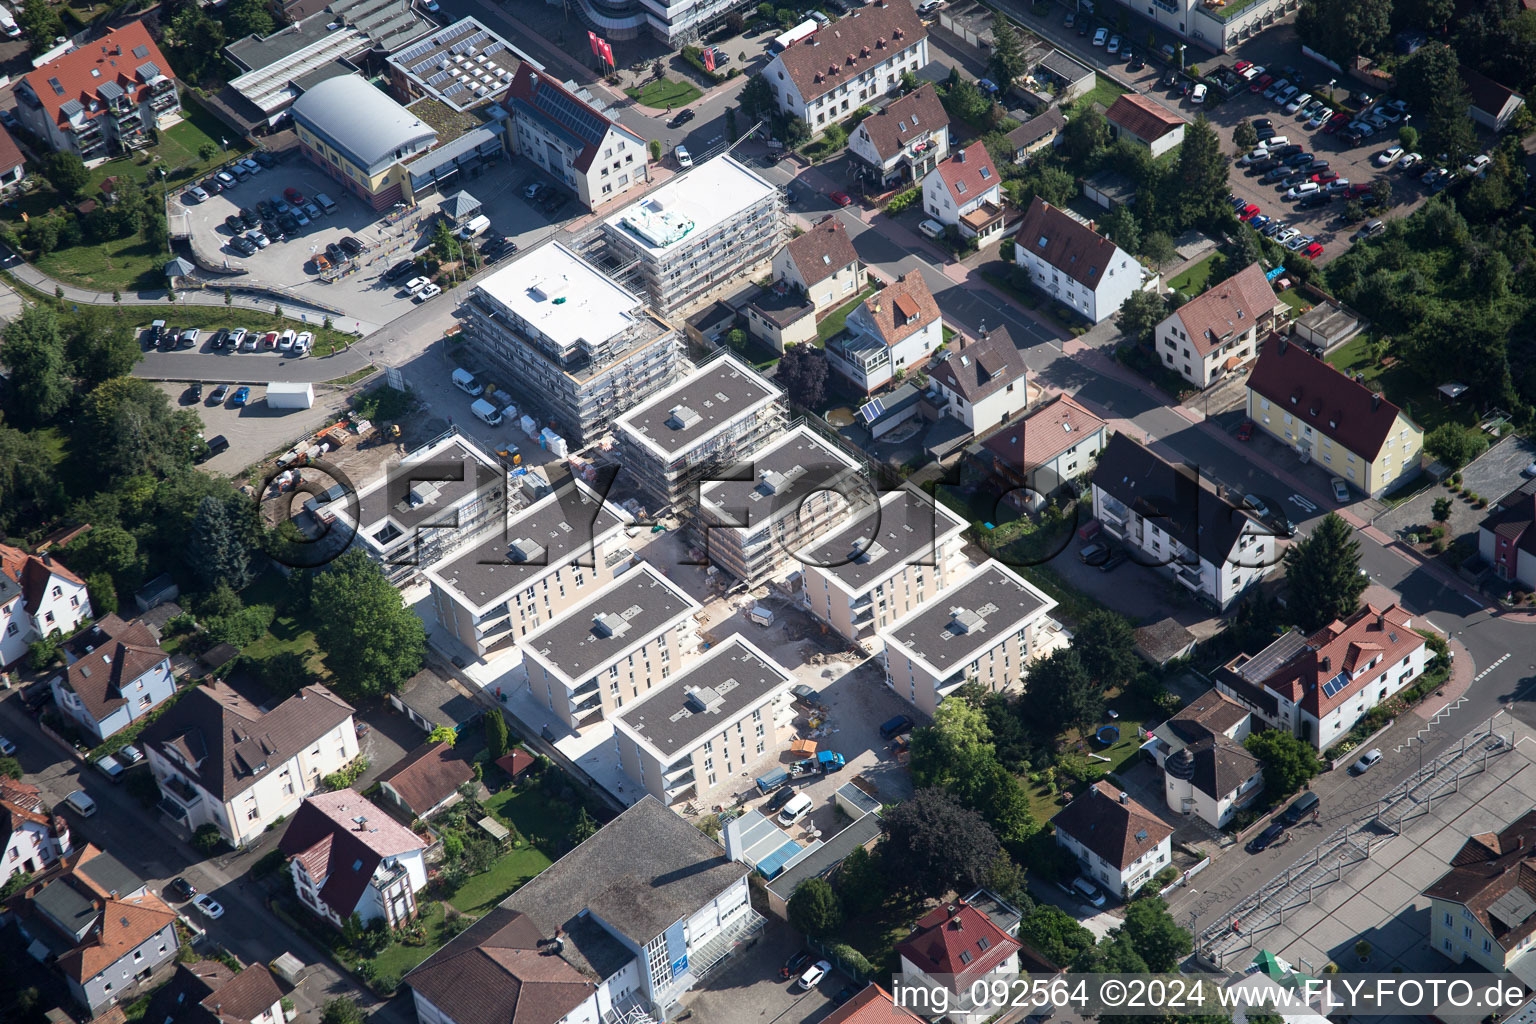 Drohnenbild von Gebäude- Ensemble- Baustellen zum Neubau eines Stadtquartiers 'Im Stadtkern' in Kandel im Bundesland Rheinland-Pfalz, Deutschland